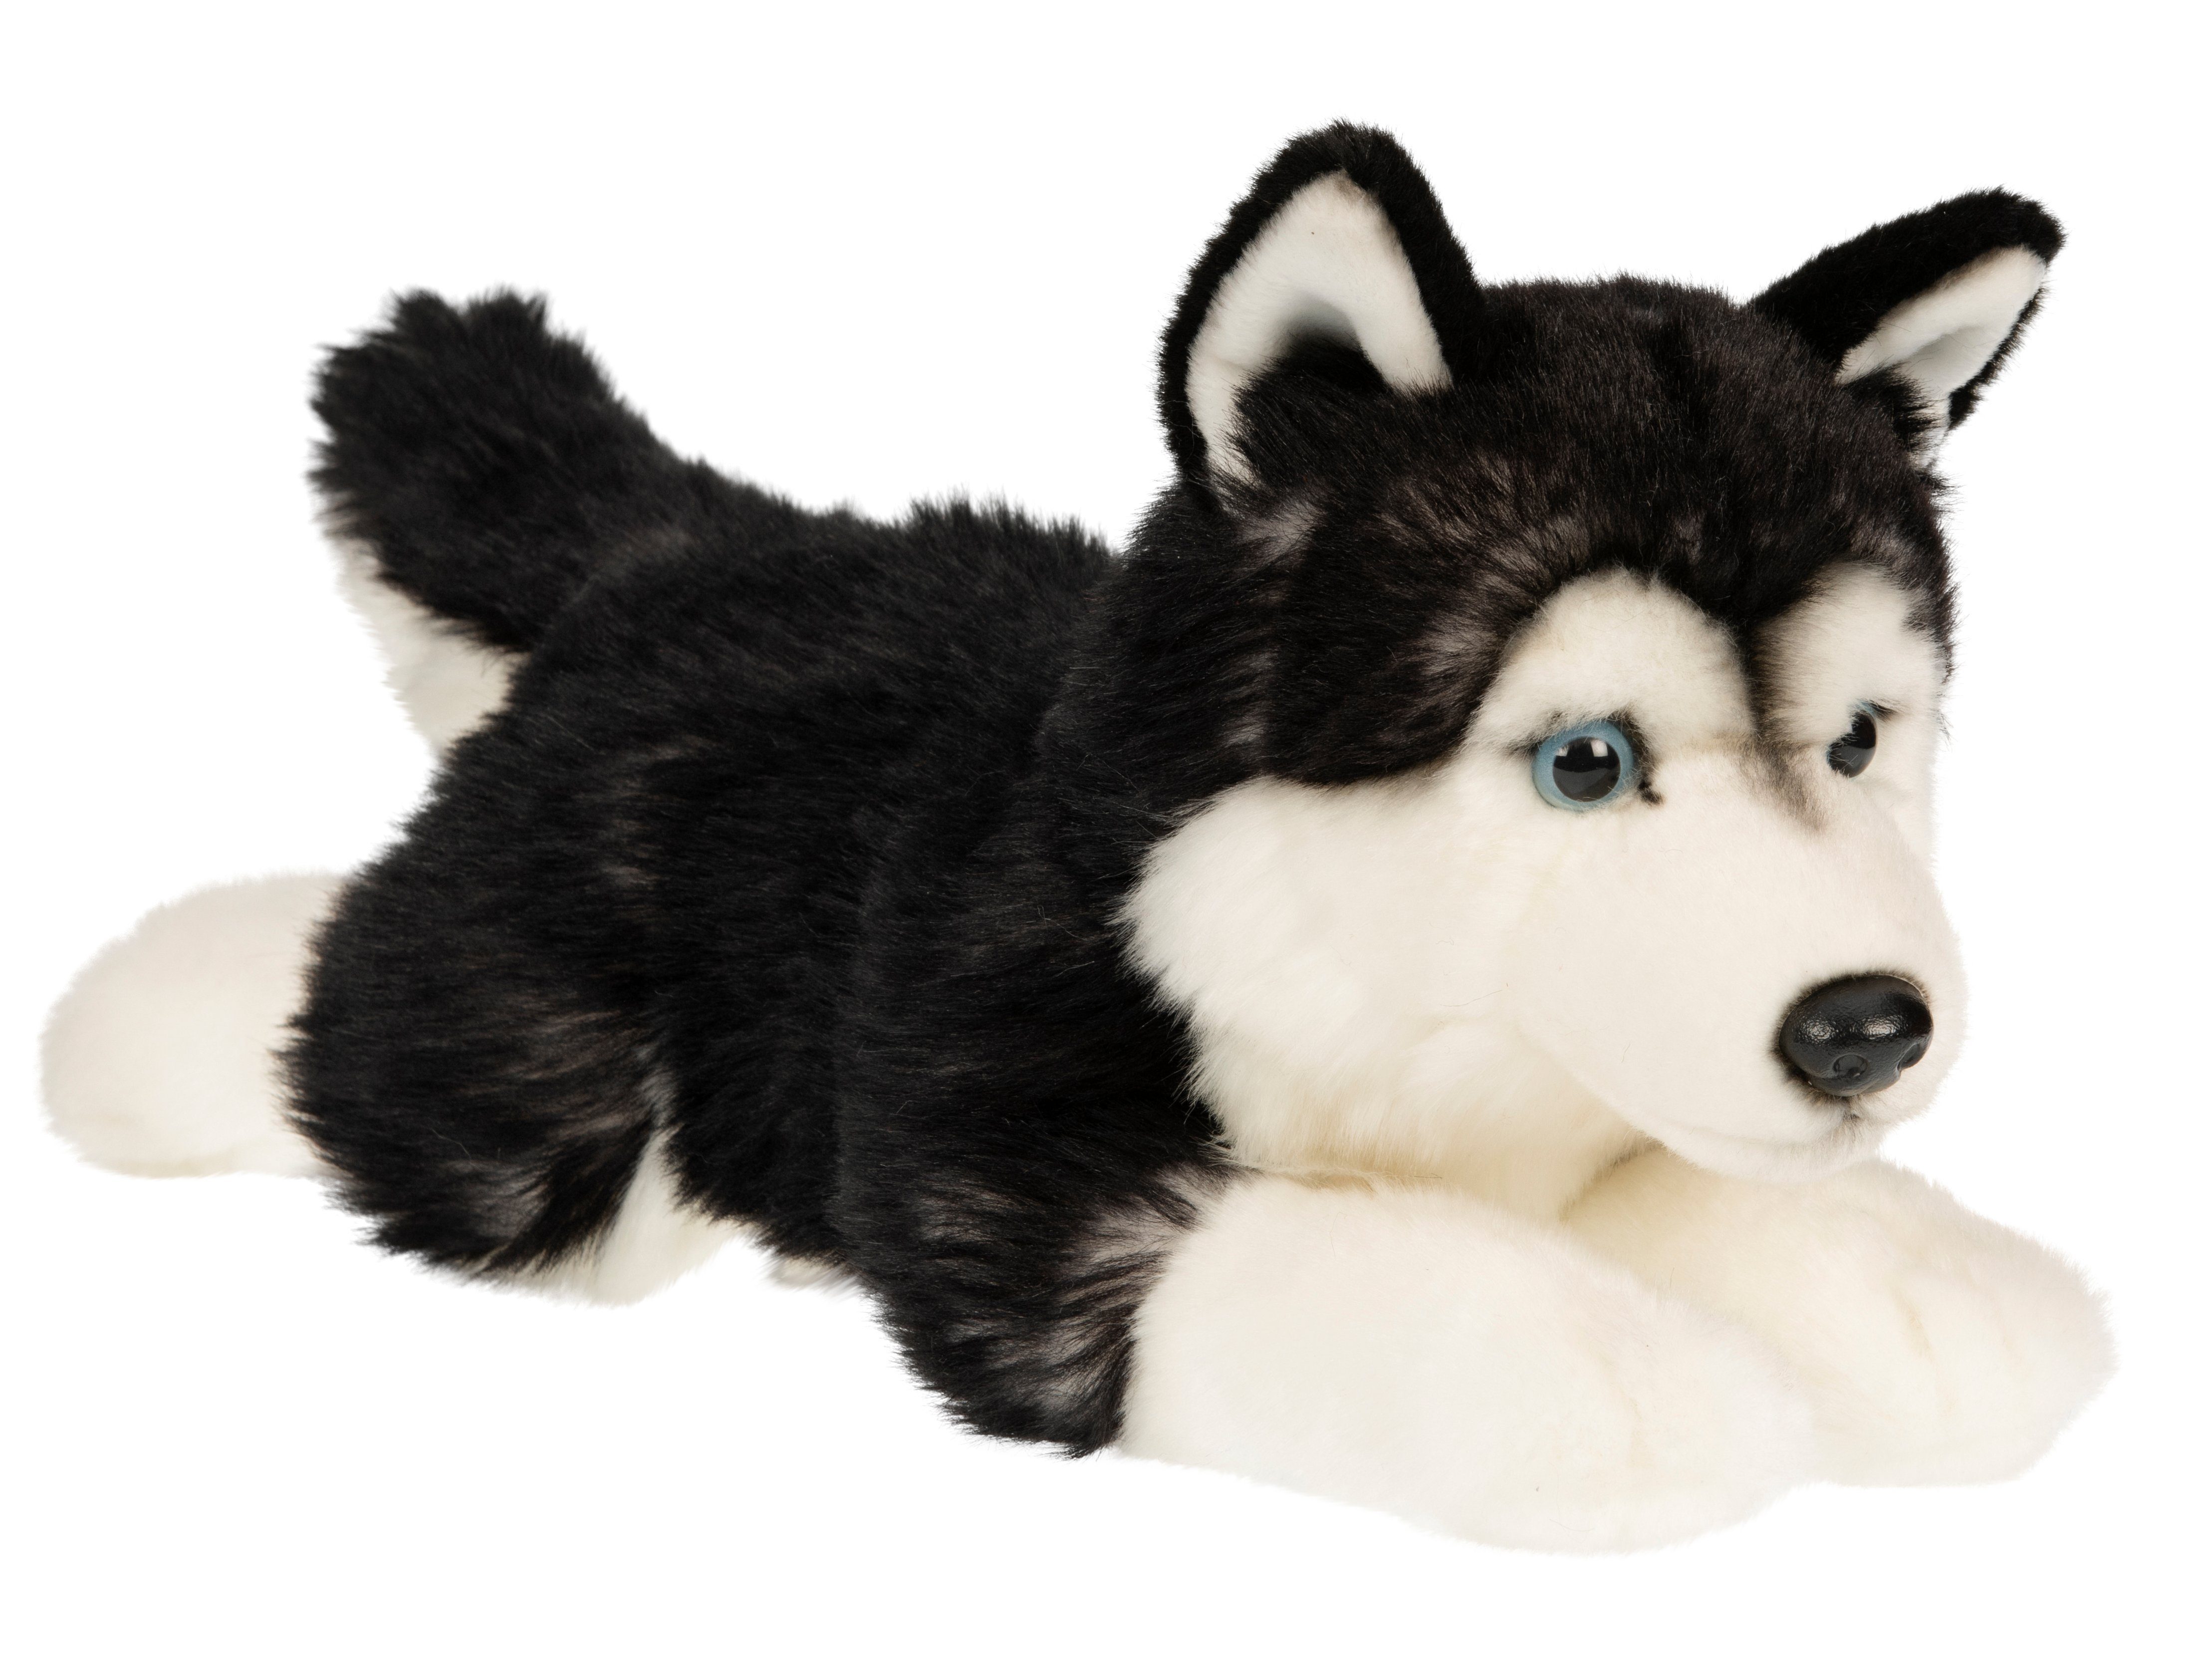 Uni-Toys Kuscheltier Husky schwarz, liegend - 41 cm (Länge) - Plüsch-Hund - Plüschtier, zu 100 % recyceltes Füllmaterial